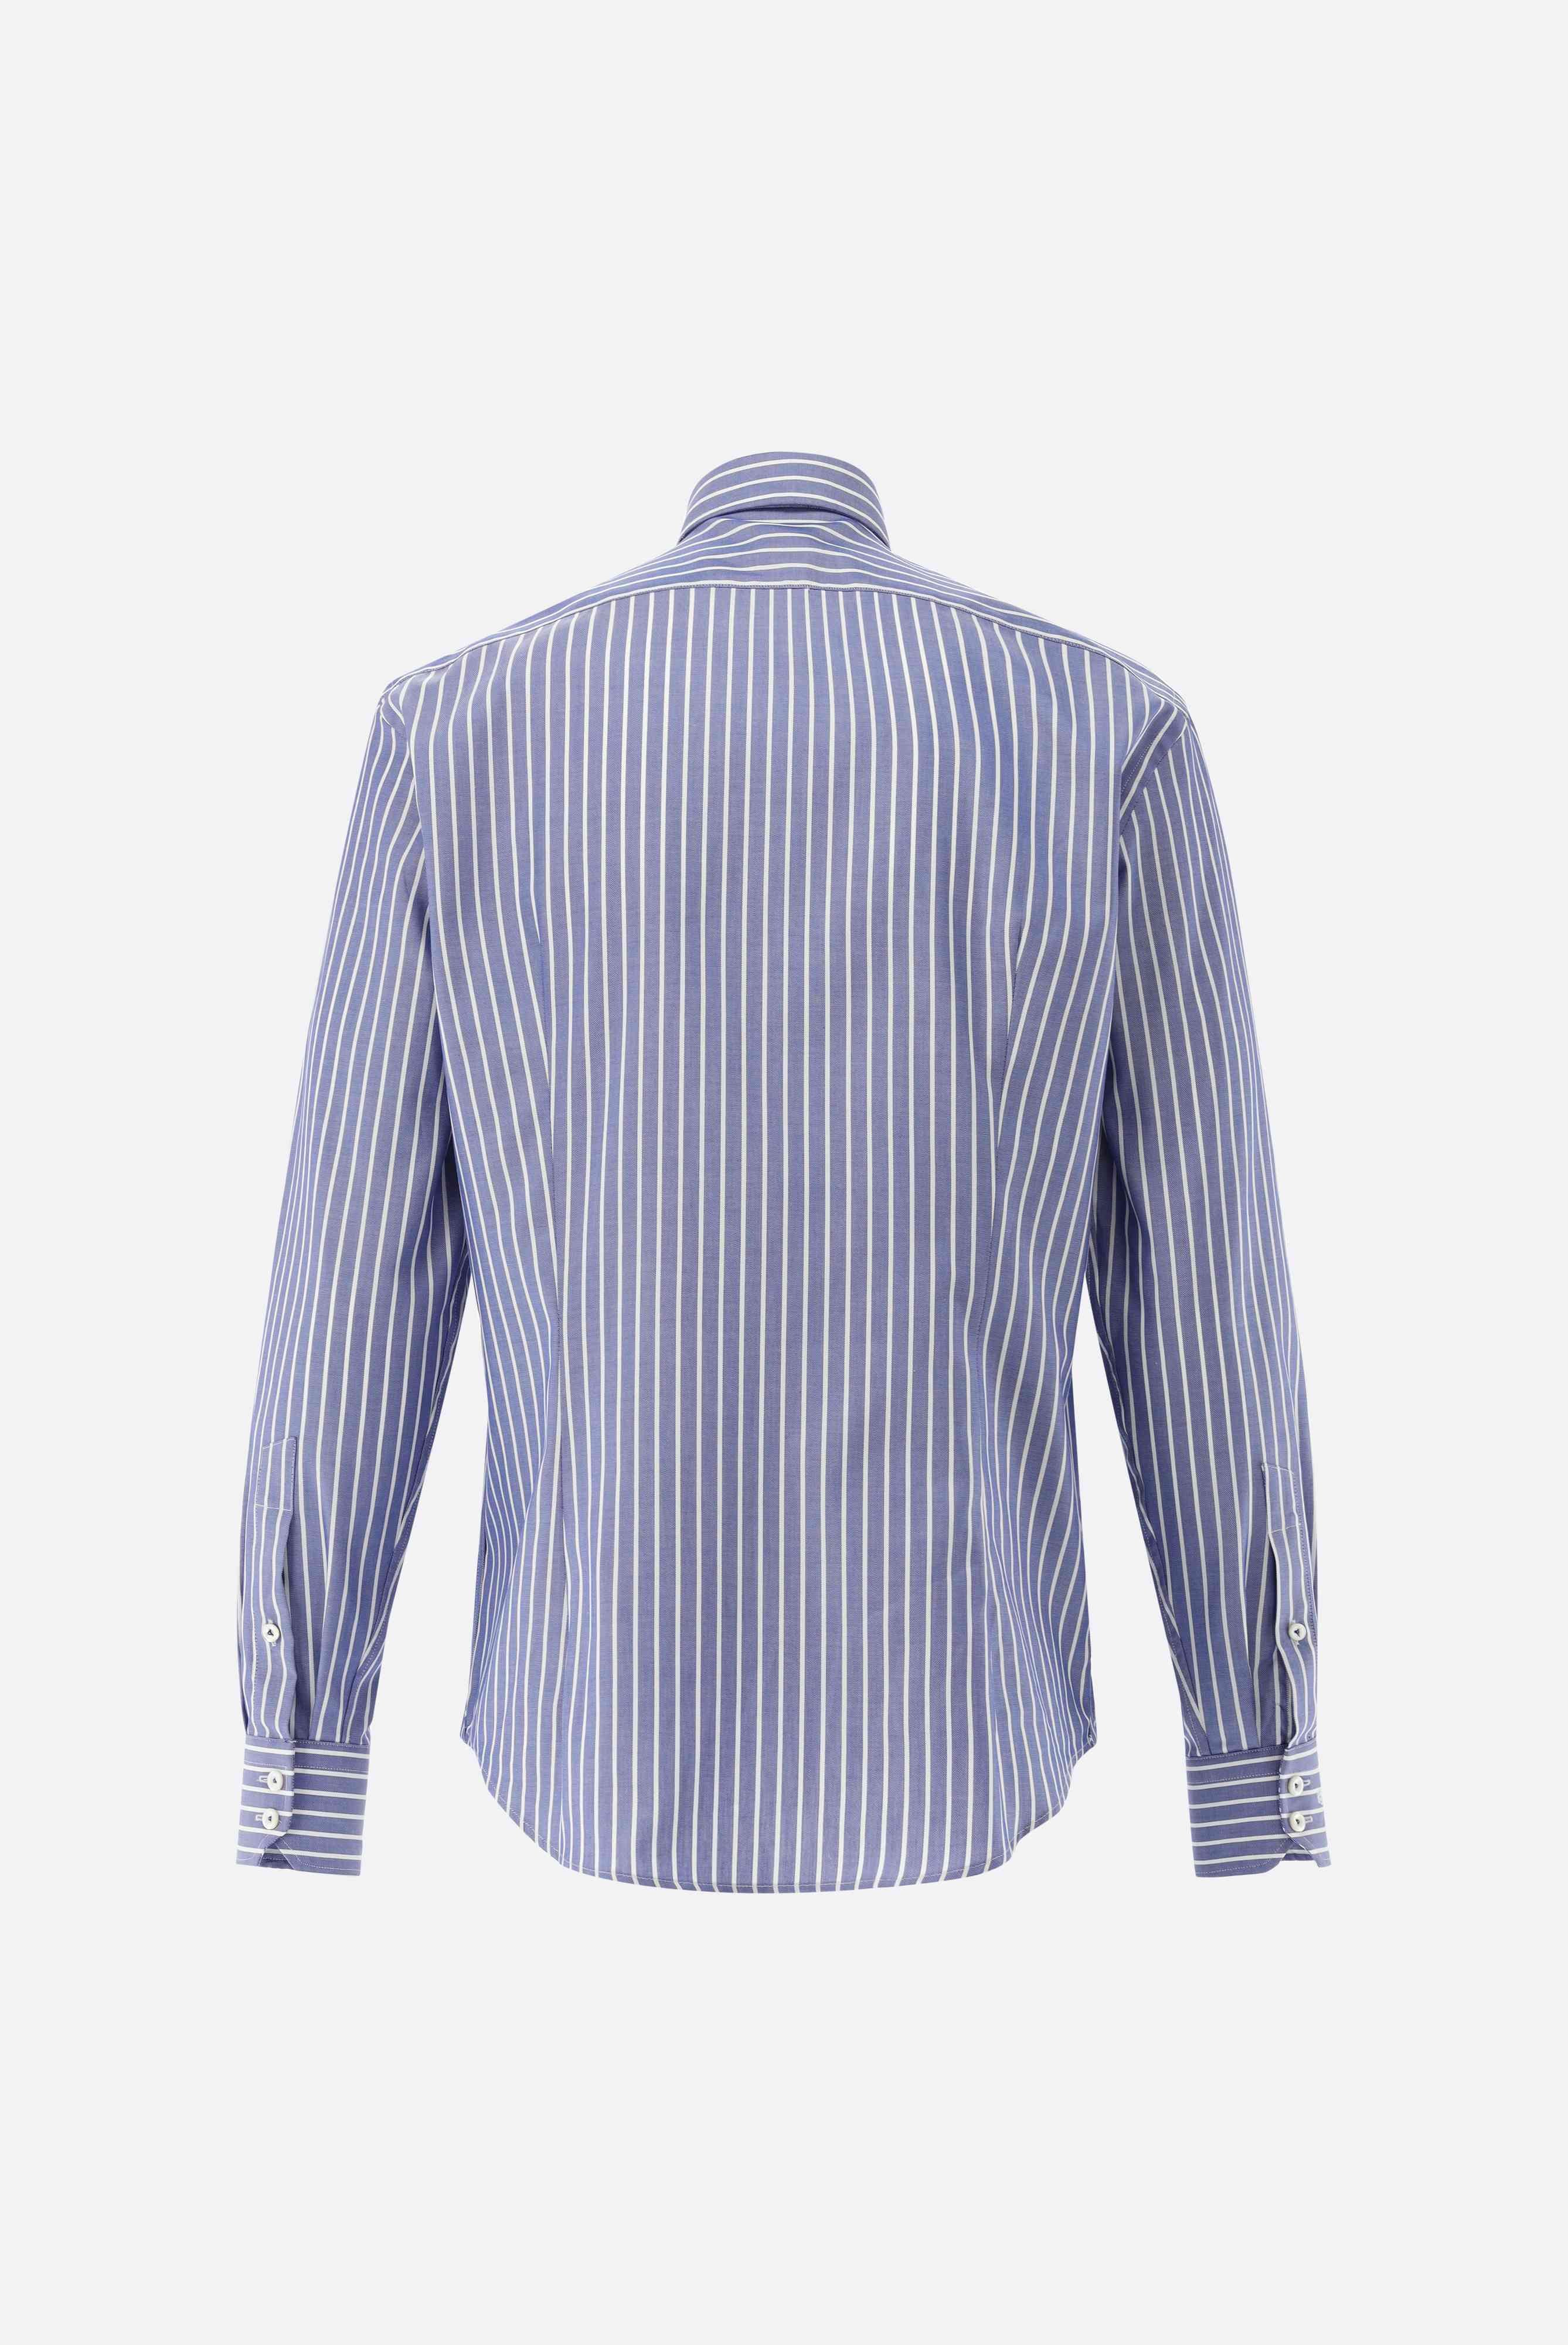 Casual Hemden+Gestreiftes Oxford Hemd Tailor Fit+20.2013.AV.151956.770.38